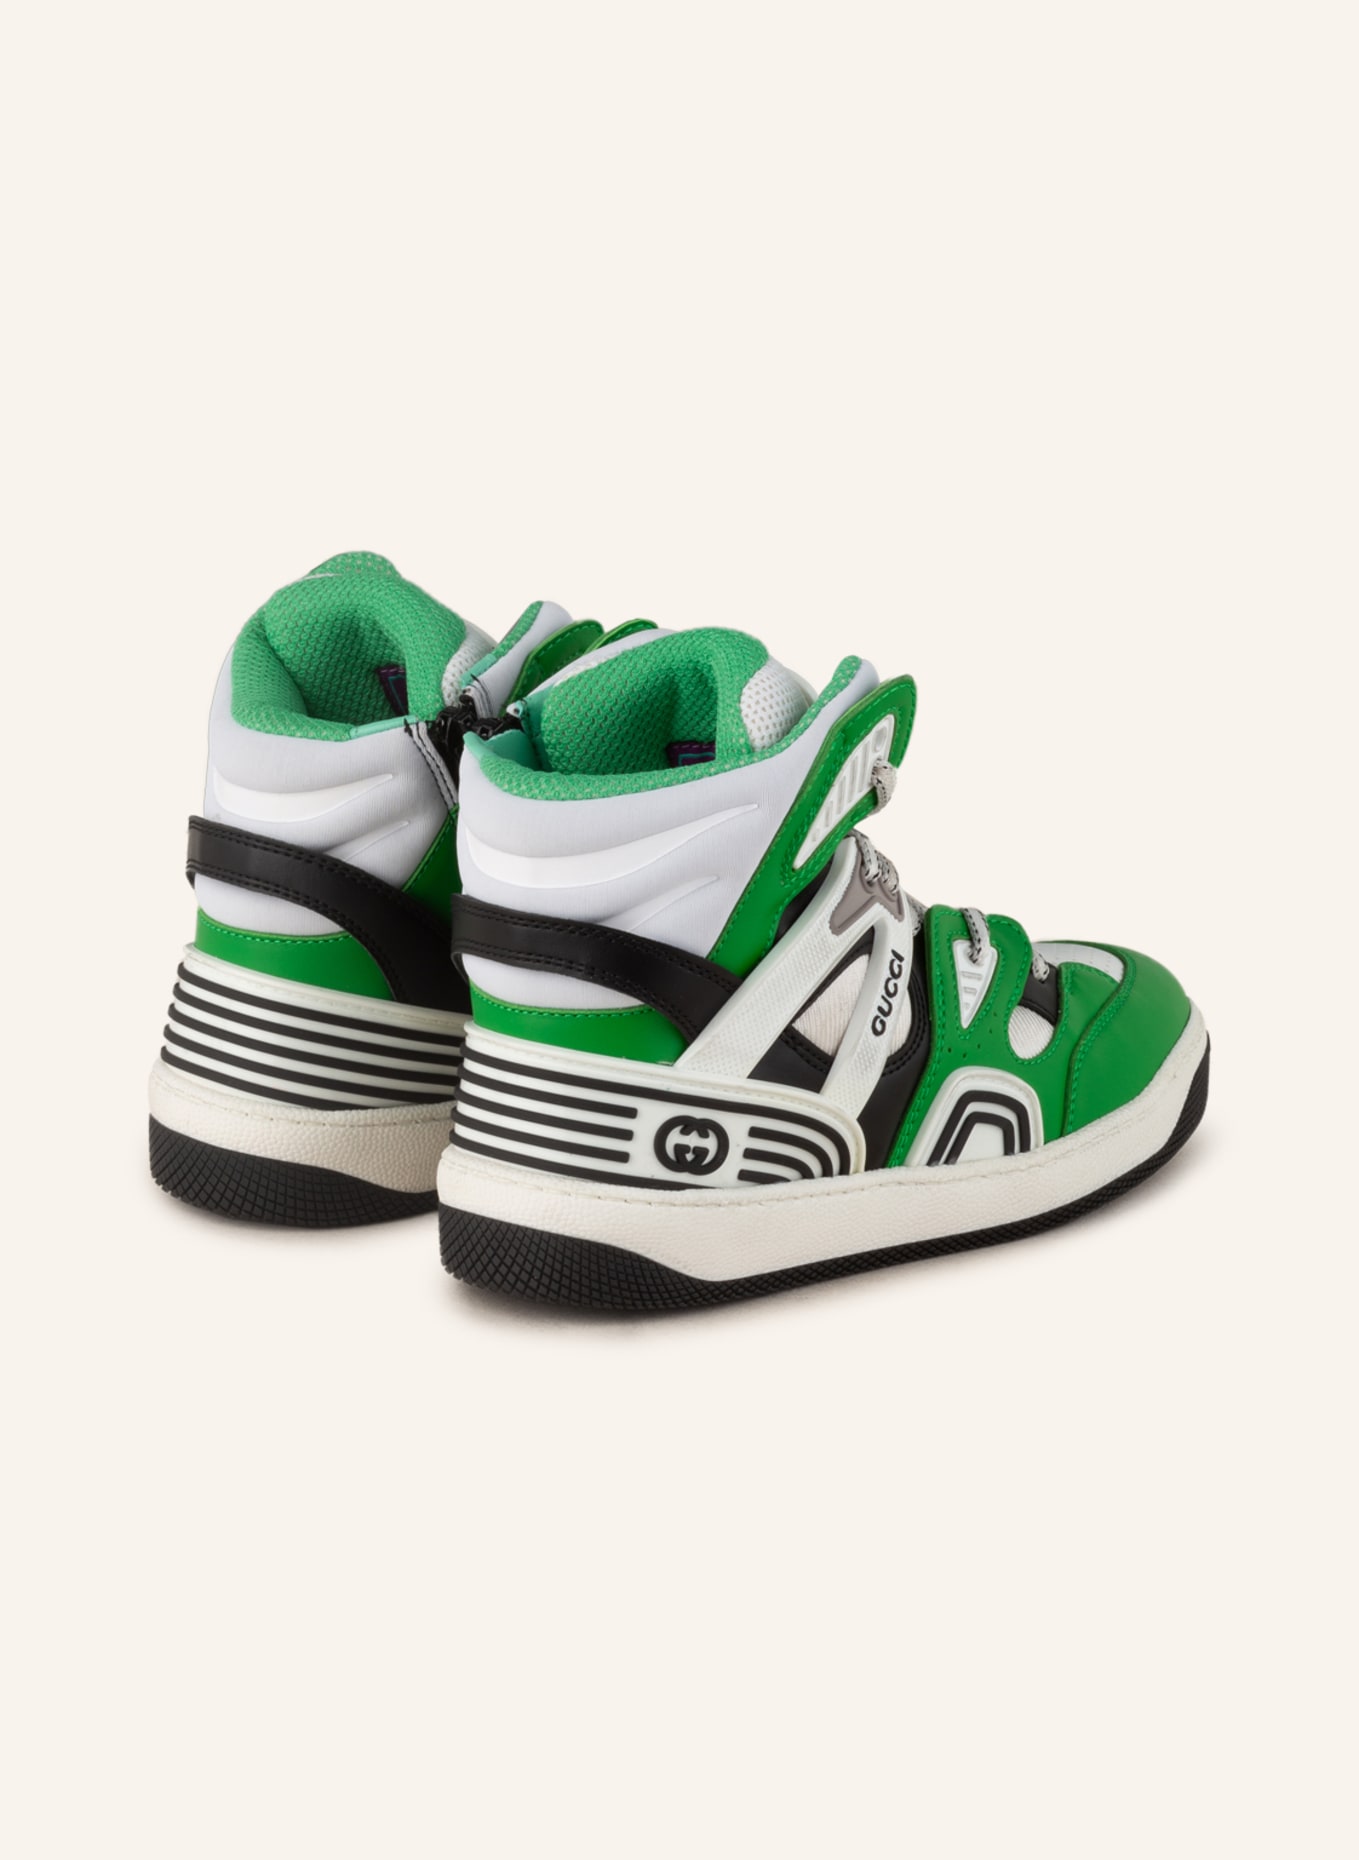 GUCCI Hightop-Sneaker, Farbe: GRÜN/ WEISS/ SCHWARZ (Bild 2)